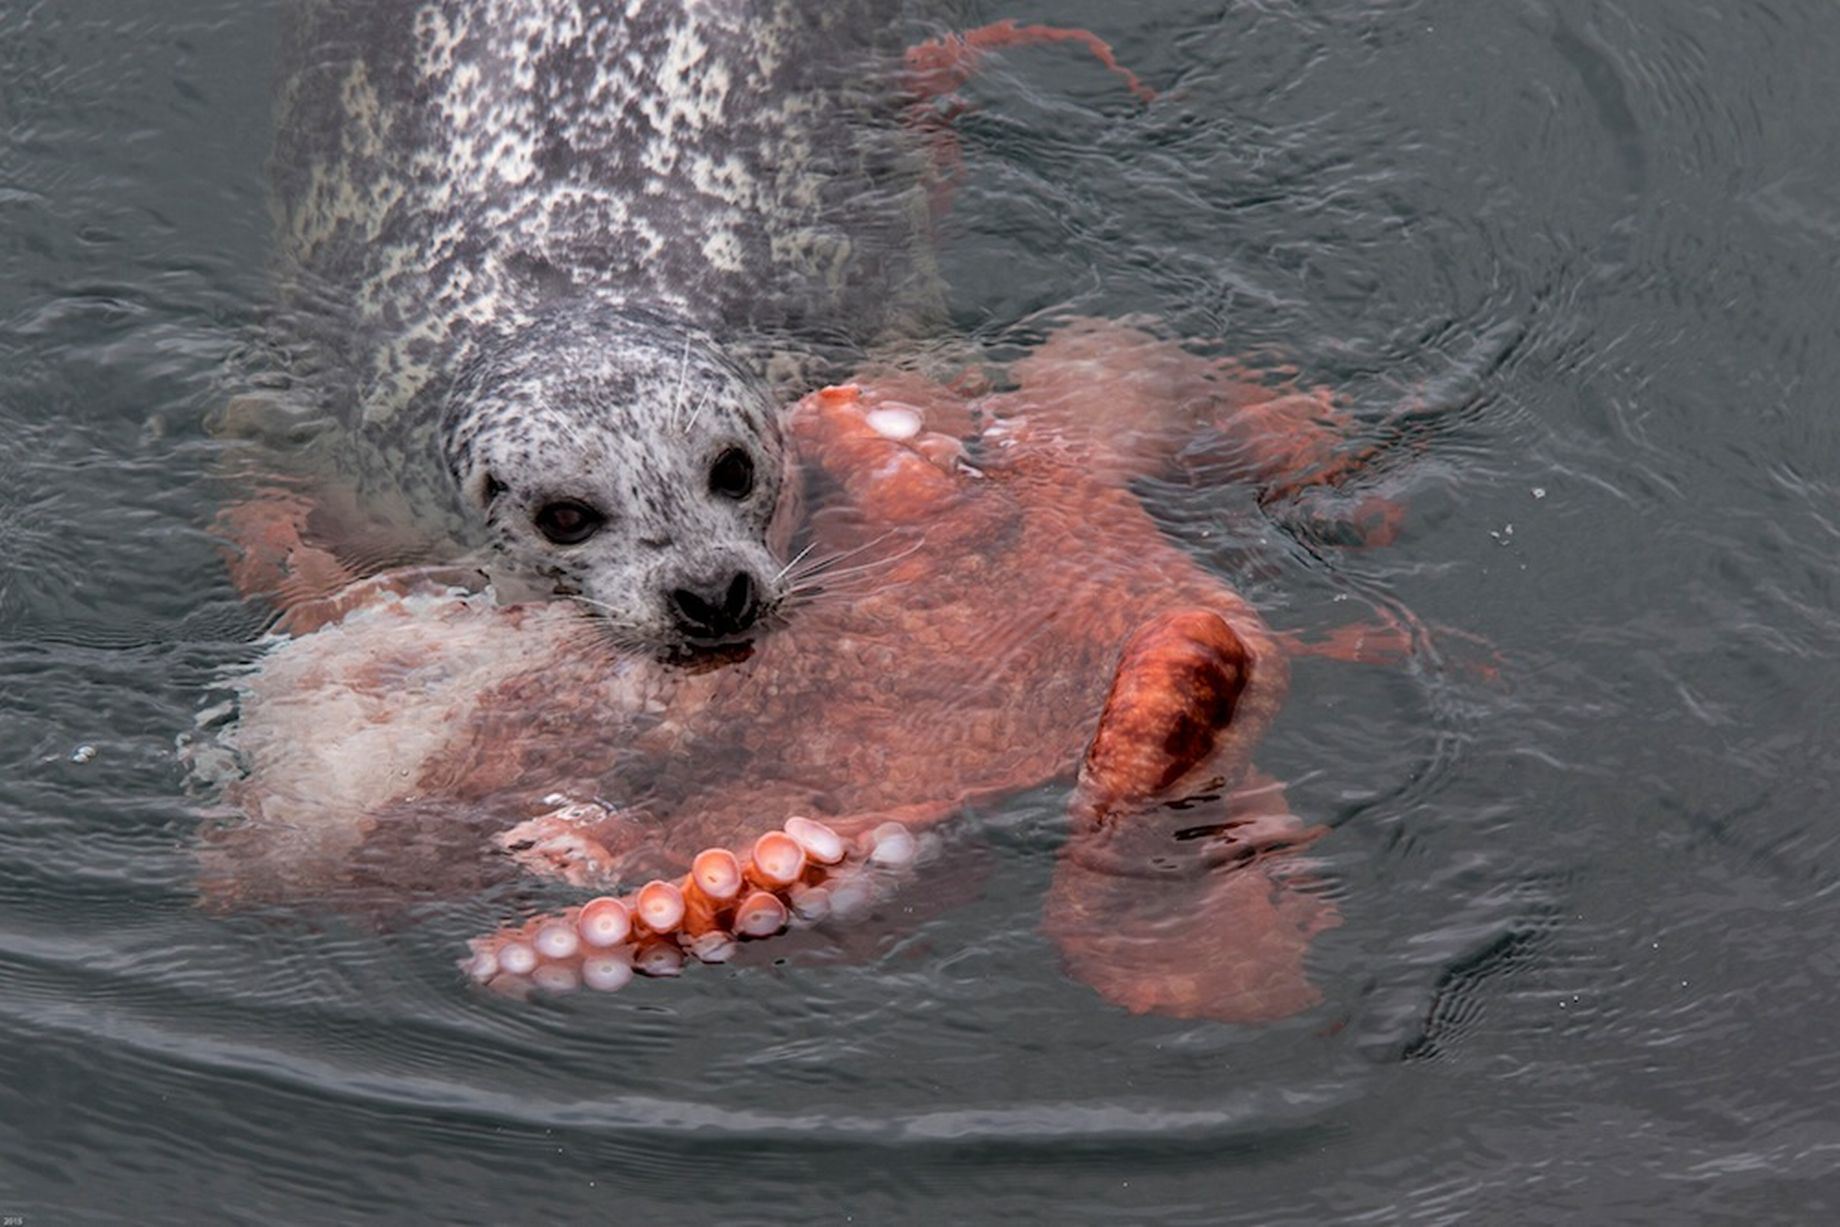 Las curiosidades de la naturaleza: La pelea entre un pulpo y una foca [VIDEO]